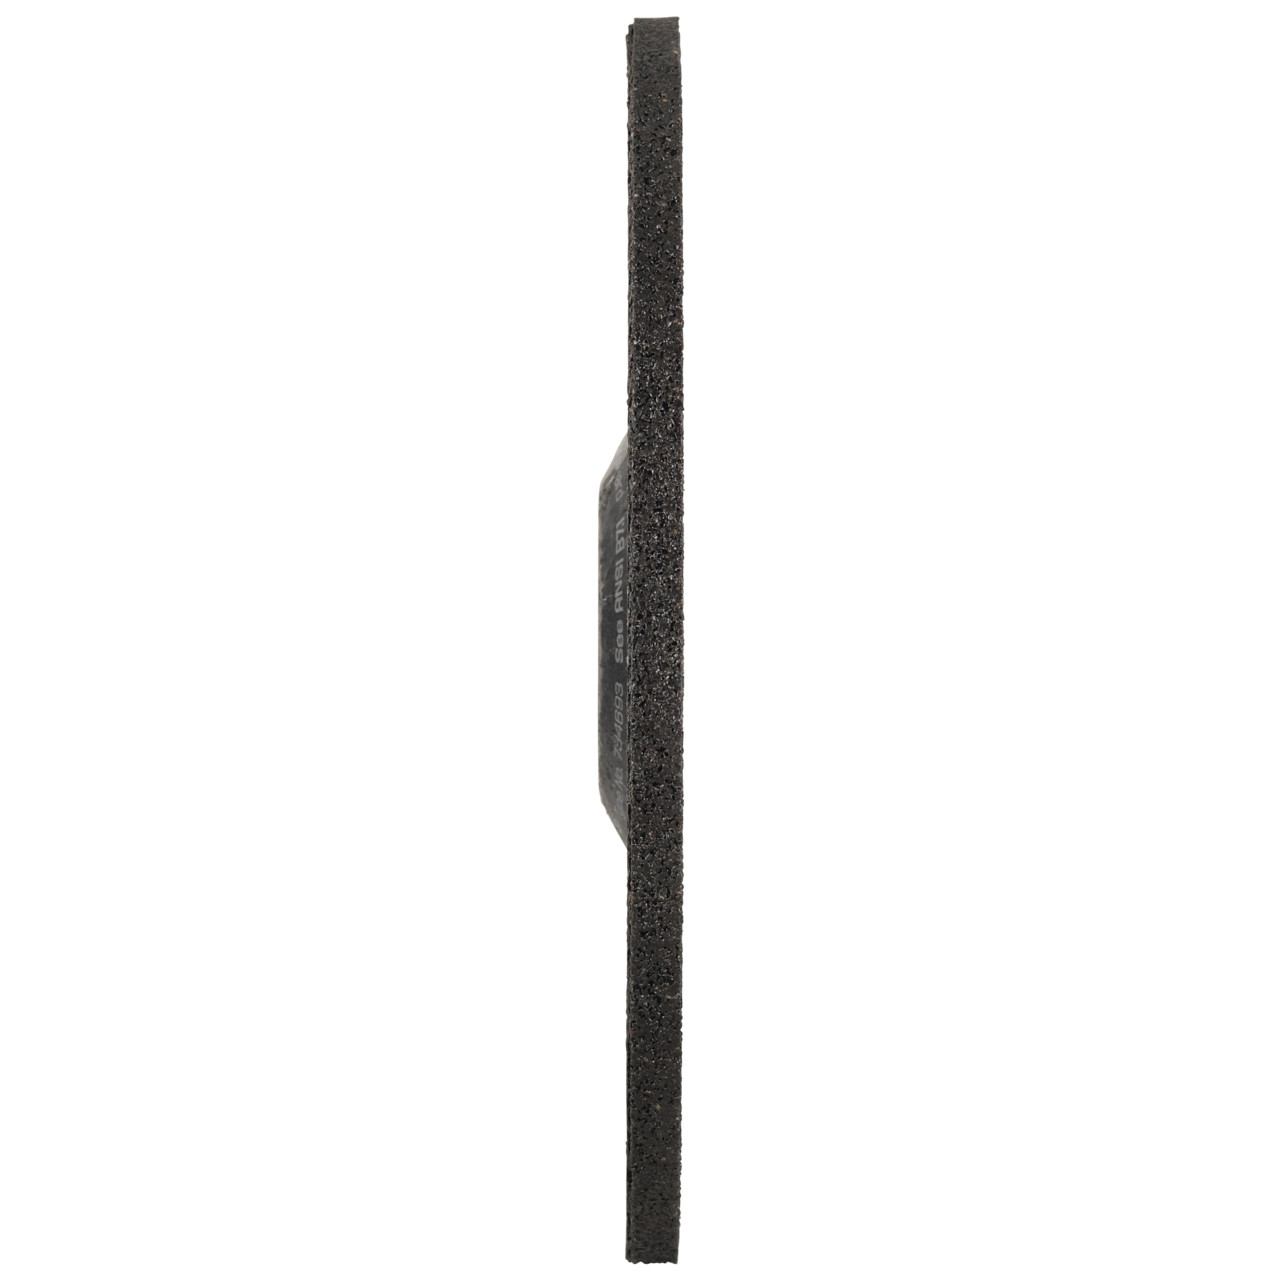 TYROLIT Schruppscheibe DxUxH 115x6x22,23 FASTCUT Basic für Stahl und Edelstahl, Form: 27C - gekröpfte Ausführung, Art. 34468716